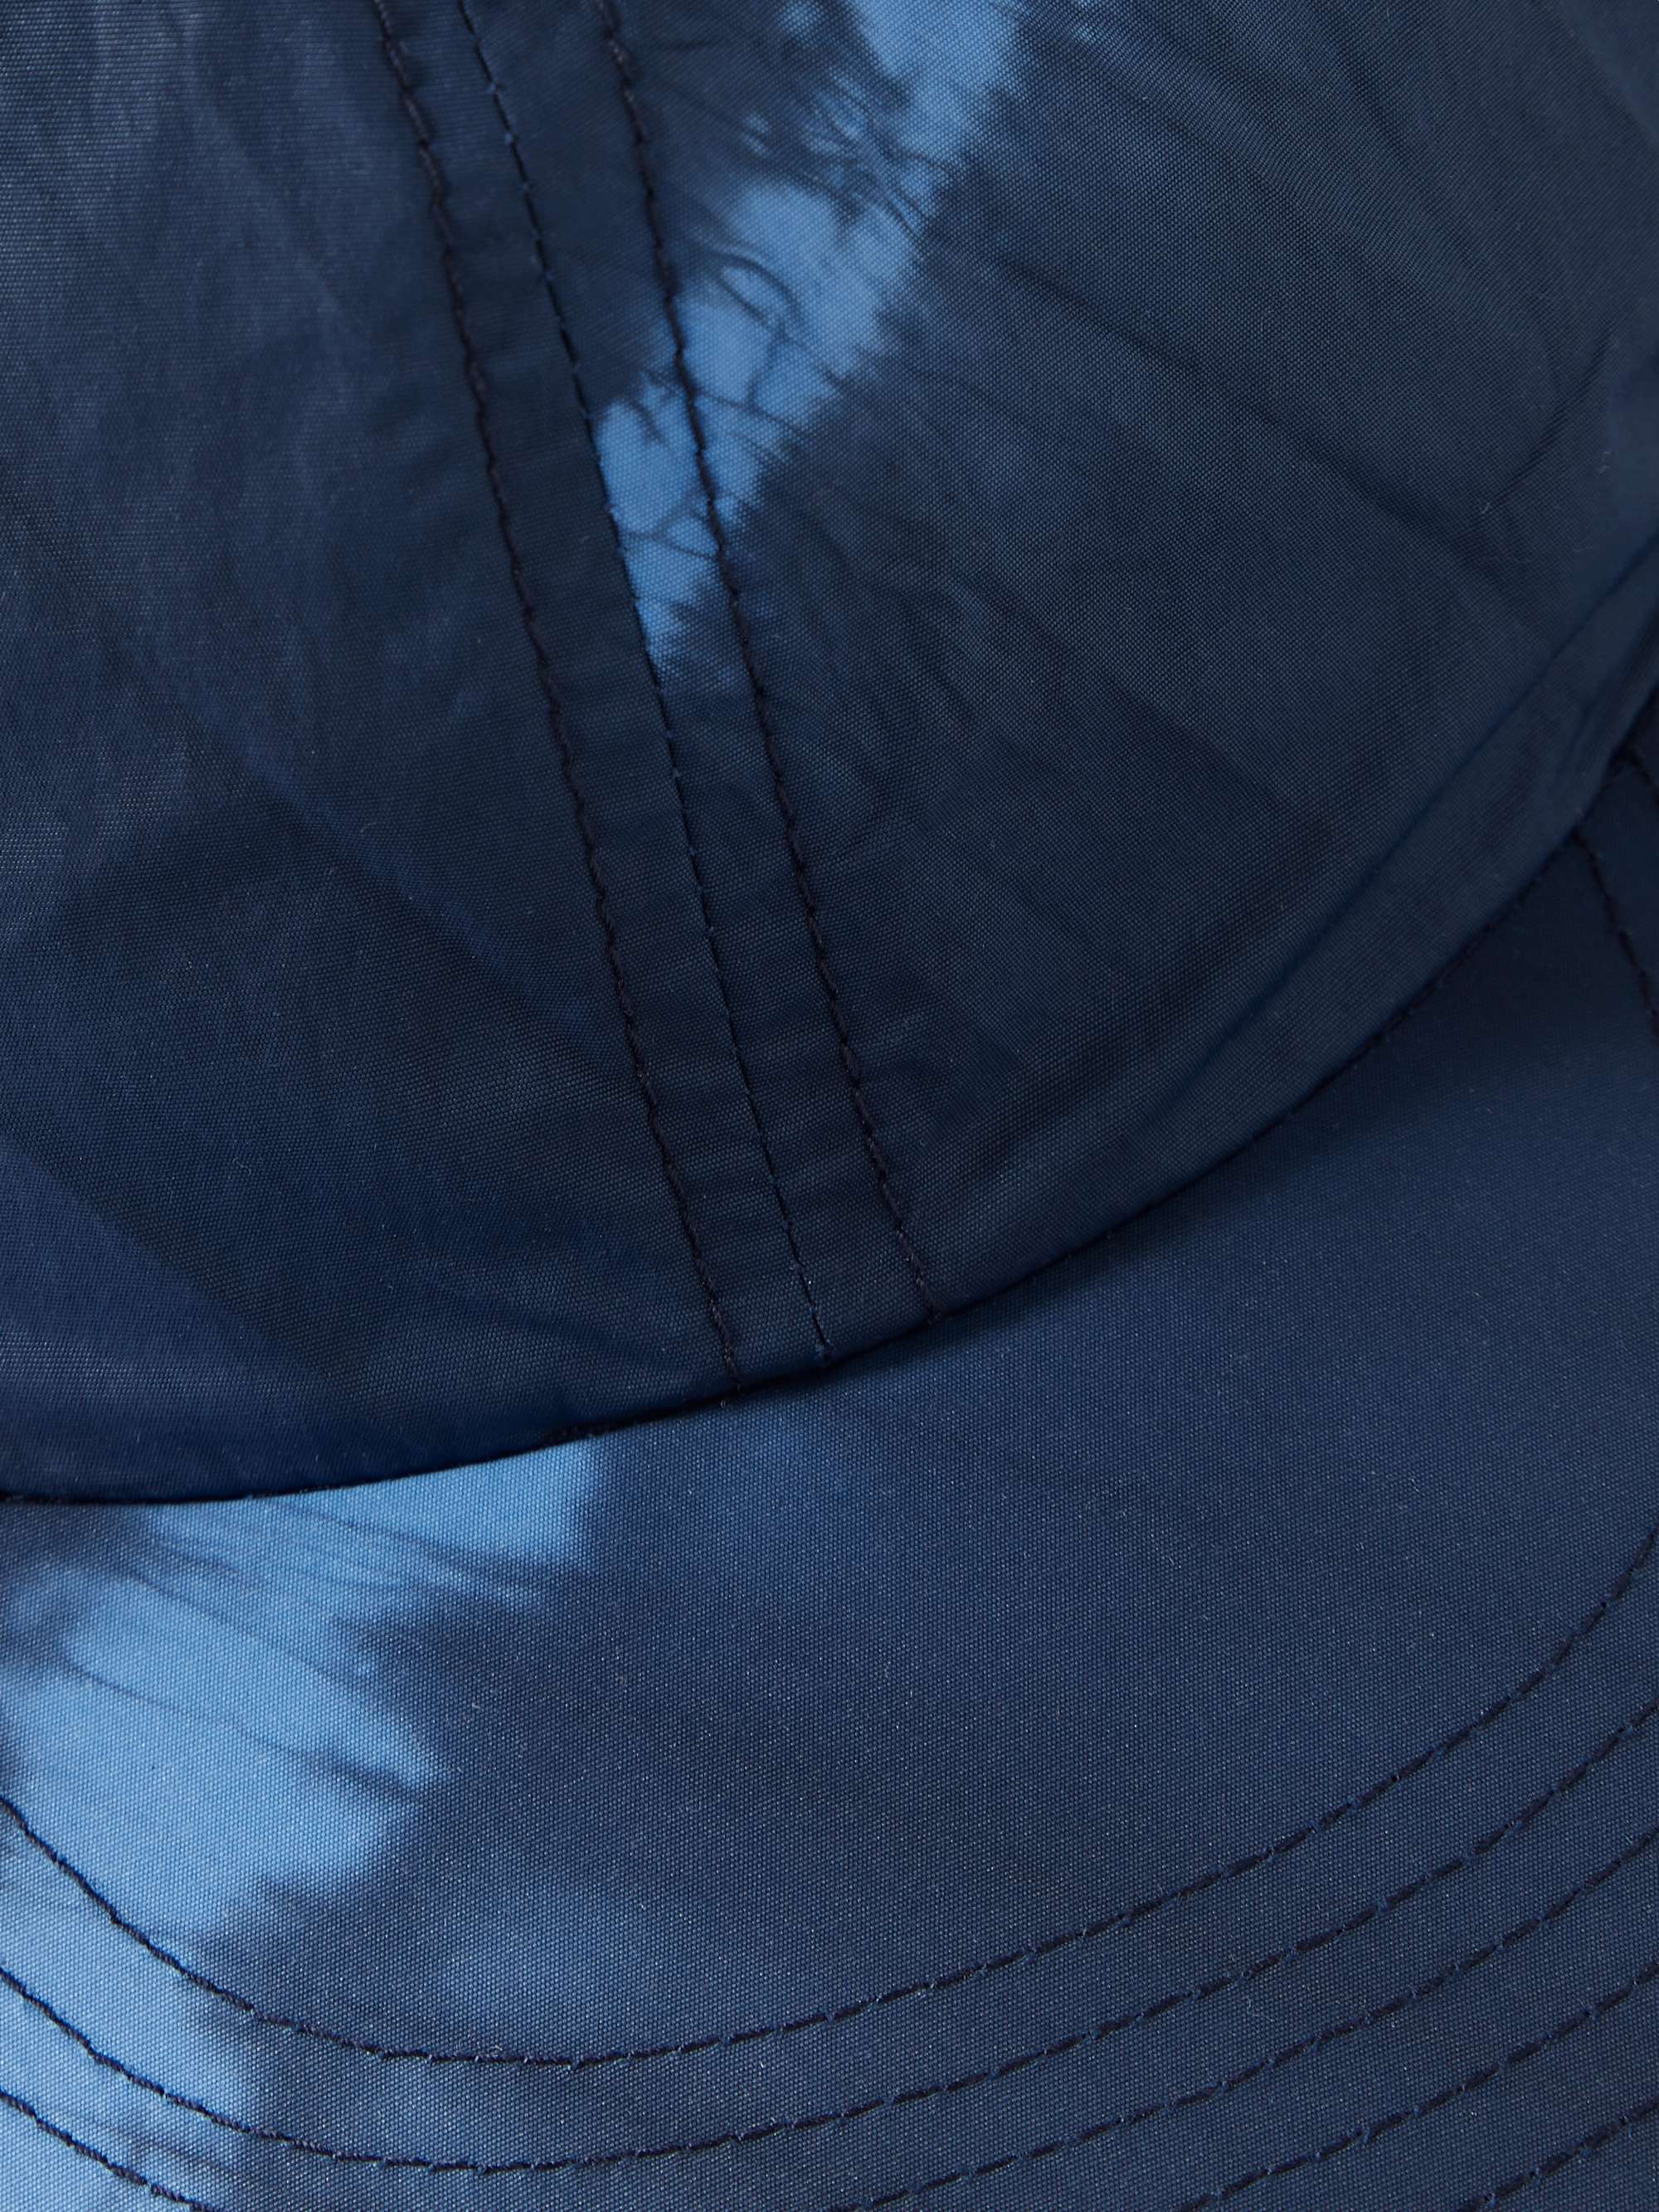 BLUE BLUE JAPAN Tie-Dyed Crinkled-Nylon Baseball Cap